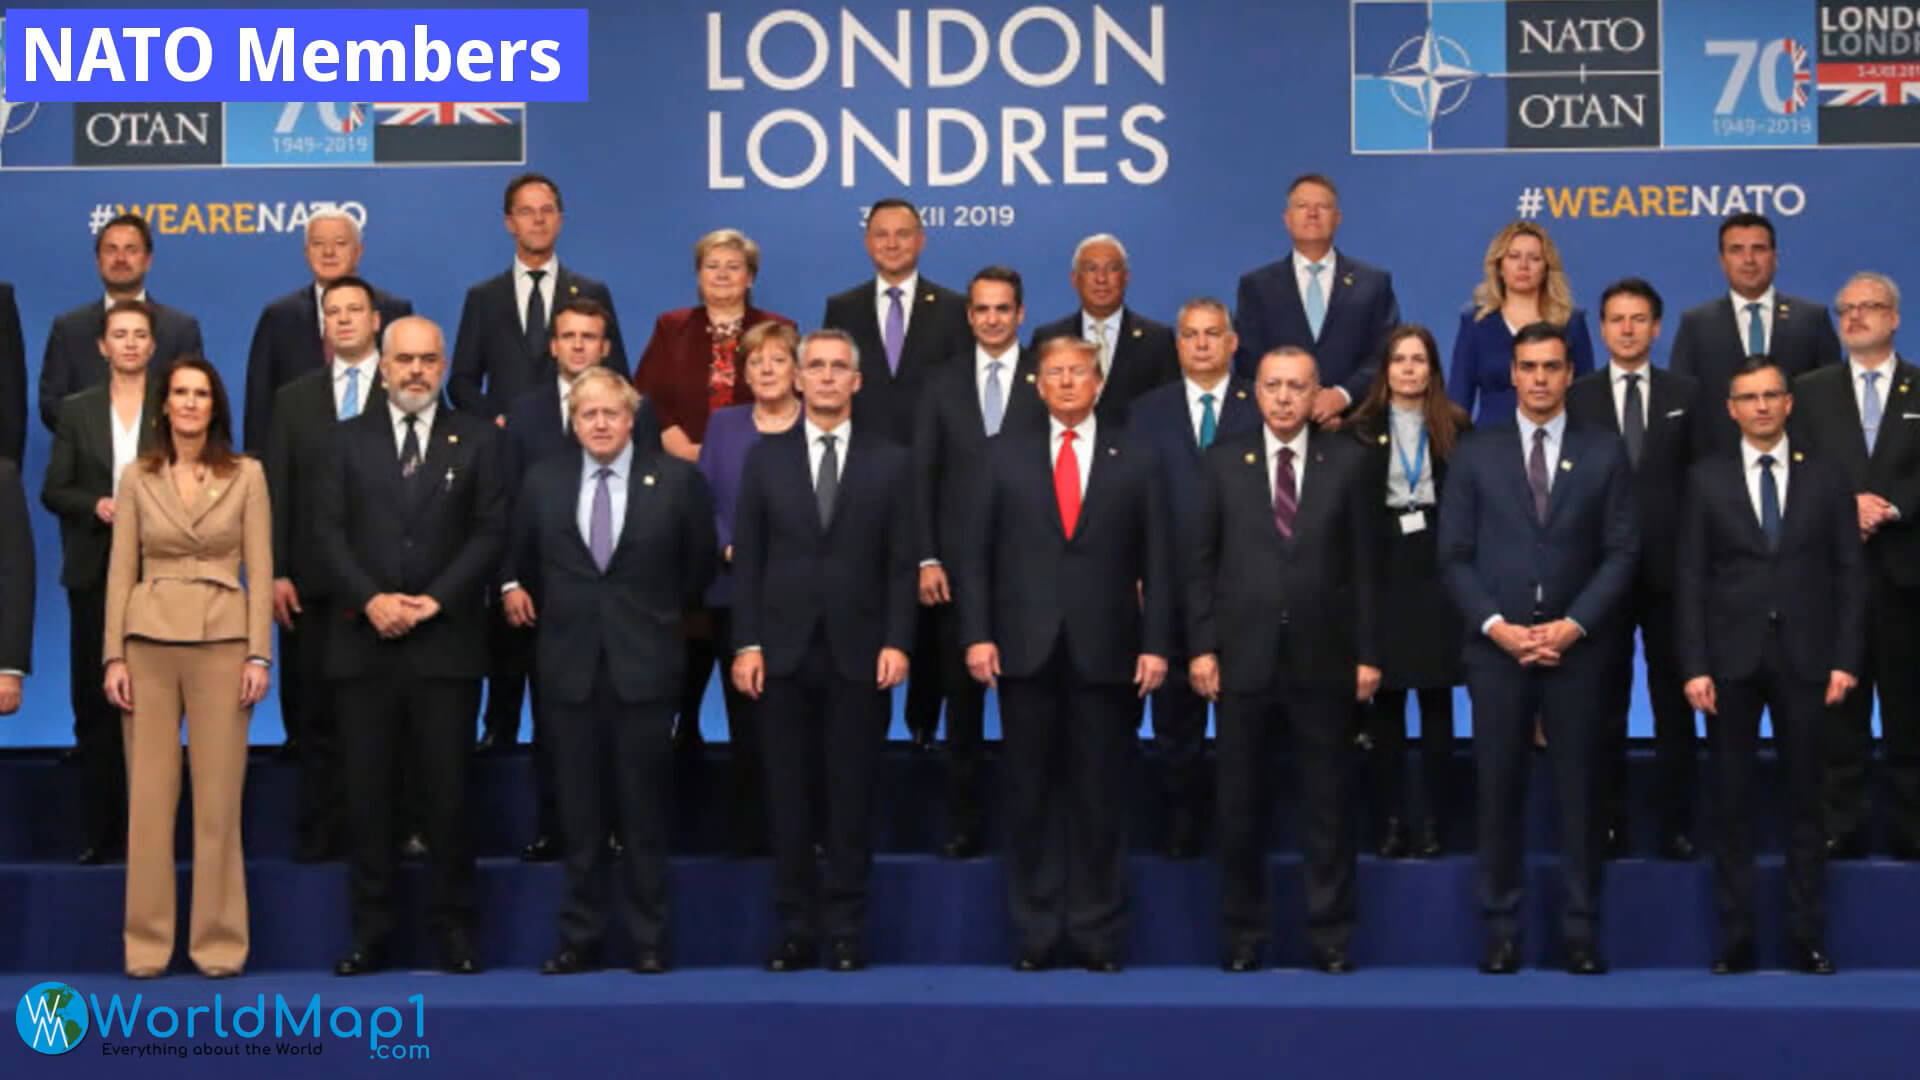 NATO Members Meetings in London 2019